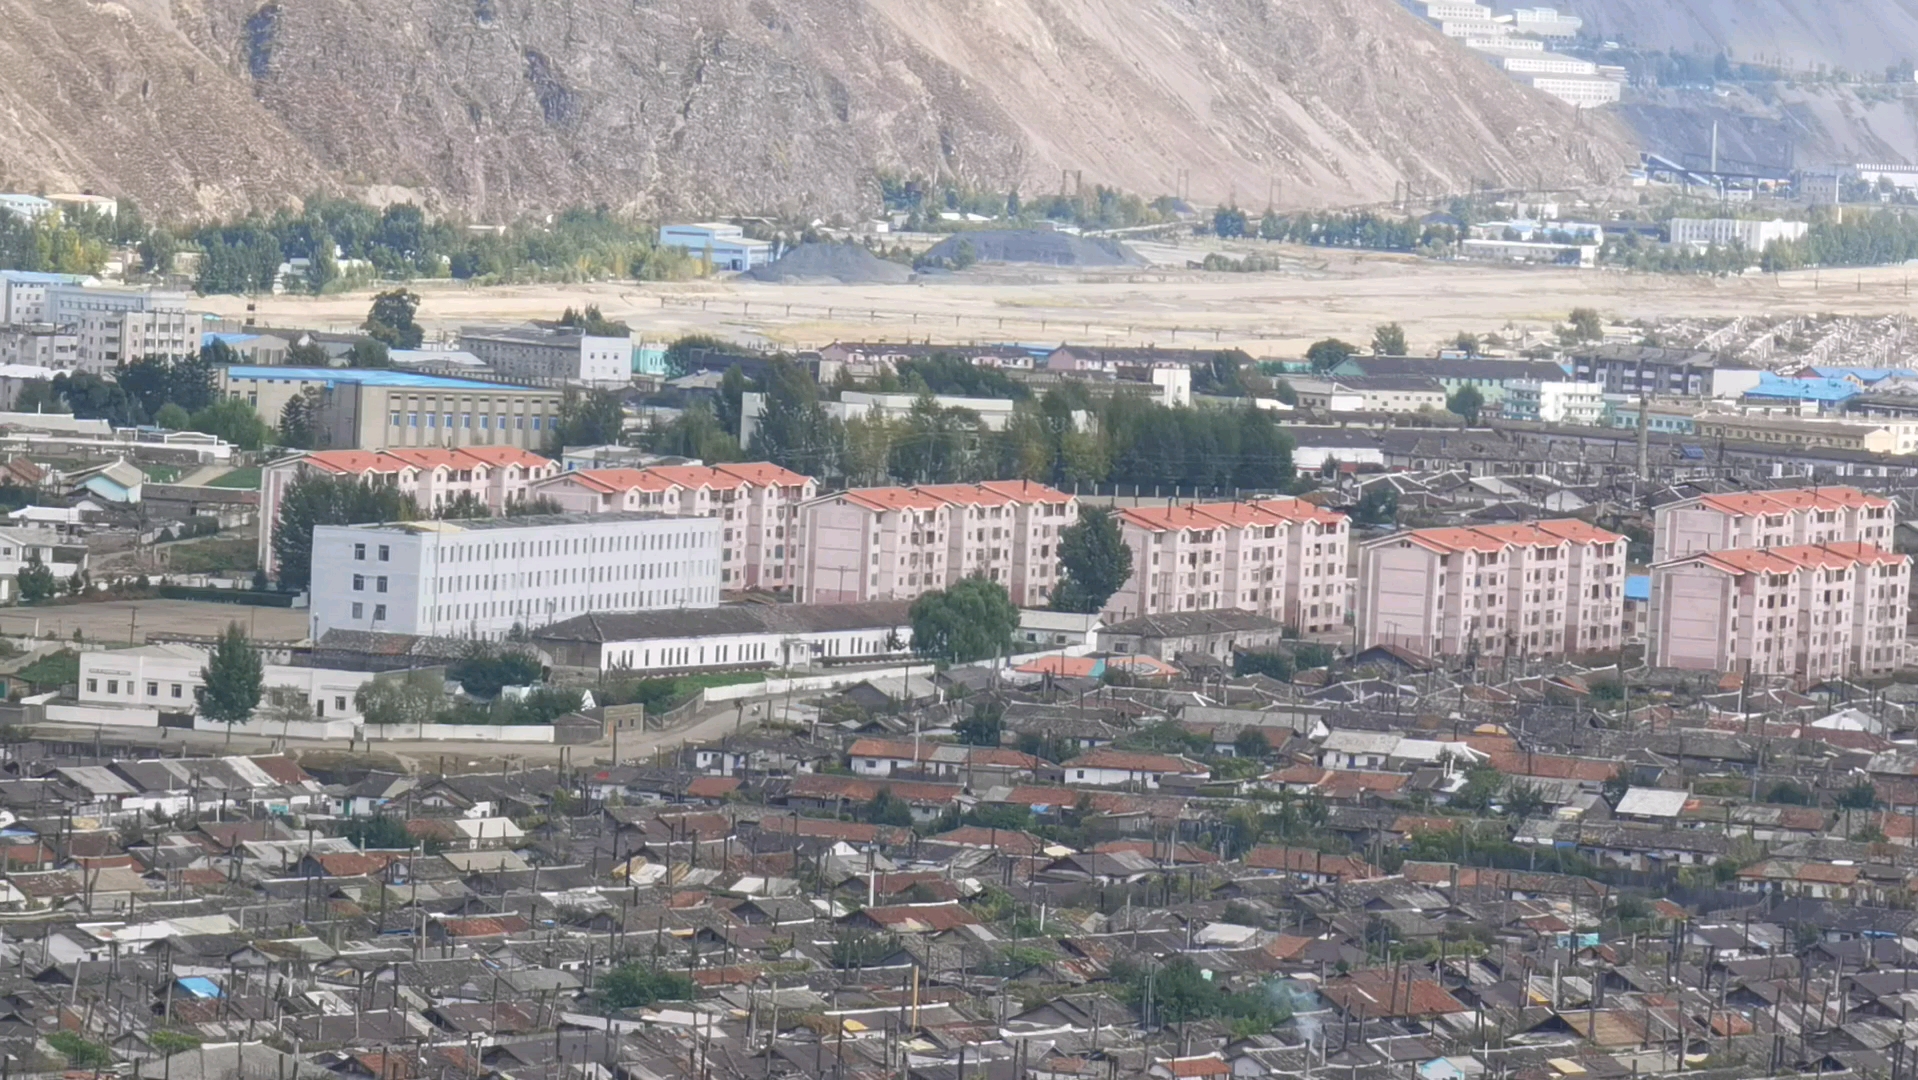 一江之隔看朝鲜茂山郡城市建设与居民生活的风貌。原本有机会发展很好，只可惜毁约和我们的铁矿合约，错失了机会